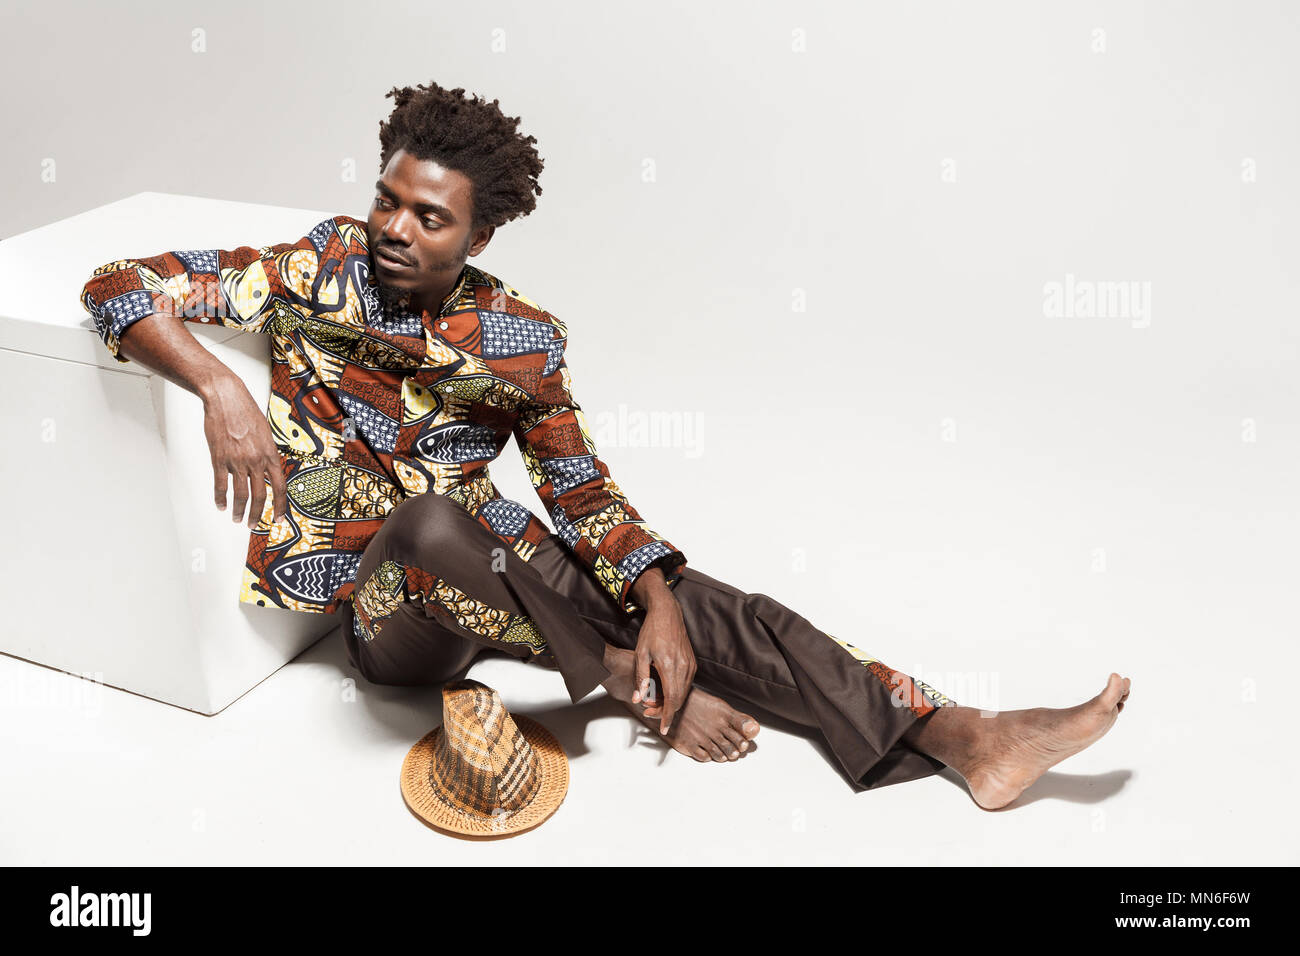 Demande l'homme afro traditionnel dans les vêtements nationaux siègent à coub. Piscine, isolé sur fond gris Banque D'Images